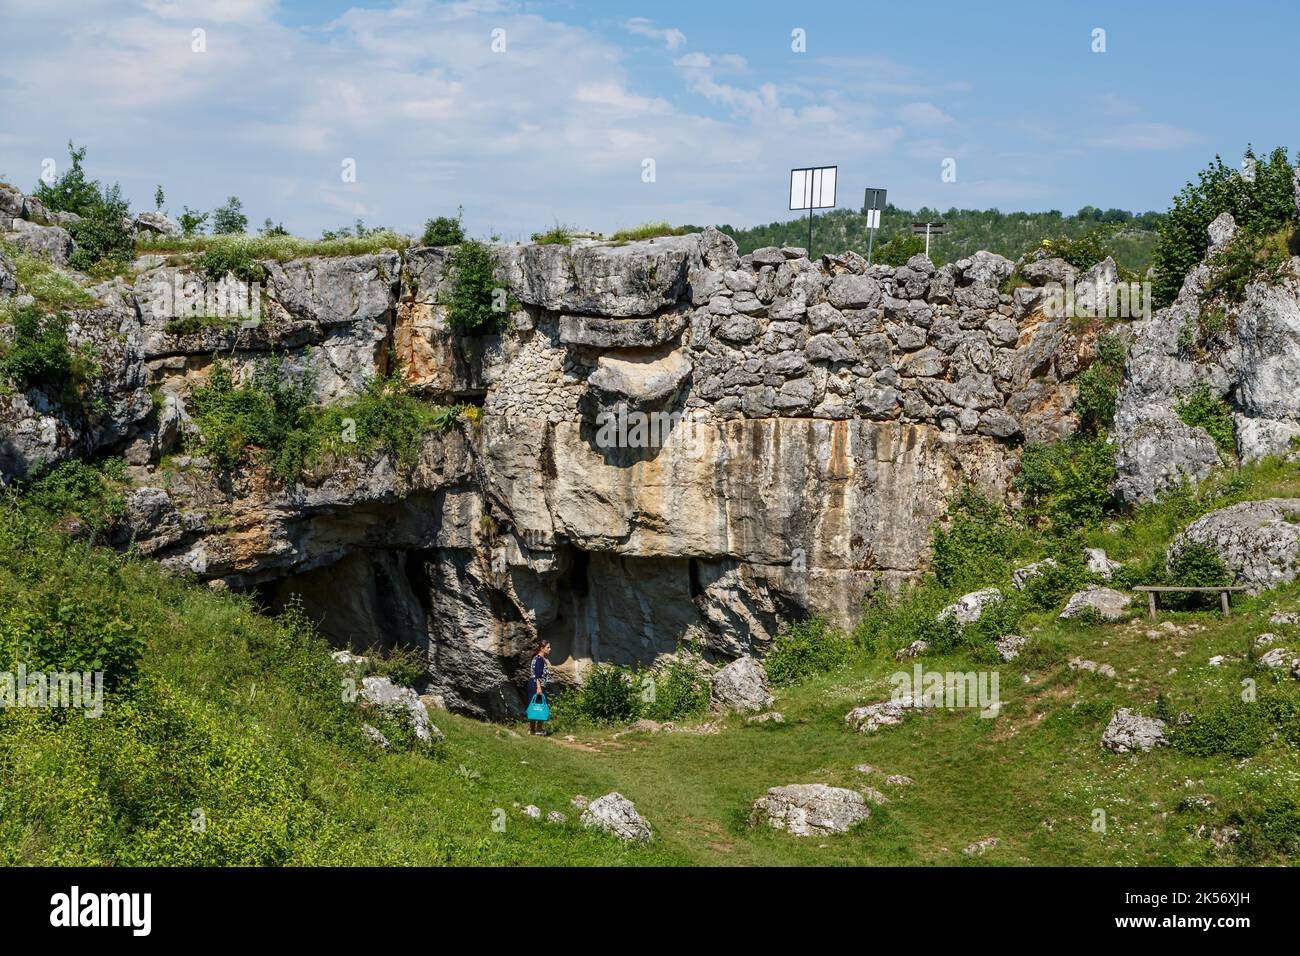 Puente de Dios ( Podul lui Dumnezeu ) - puente de roca natural formado por una cueva colapsada el 29 de junio de 2020 en Ponoarele, Mehedinti, Rumania Foto de stock